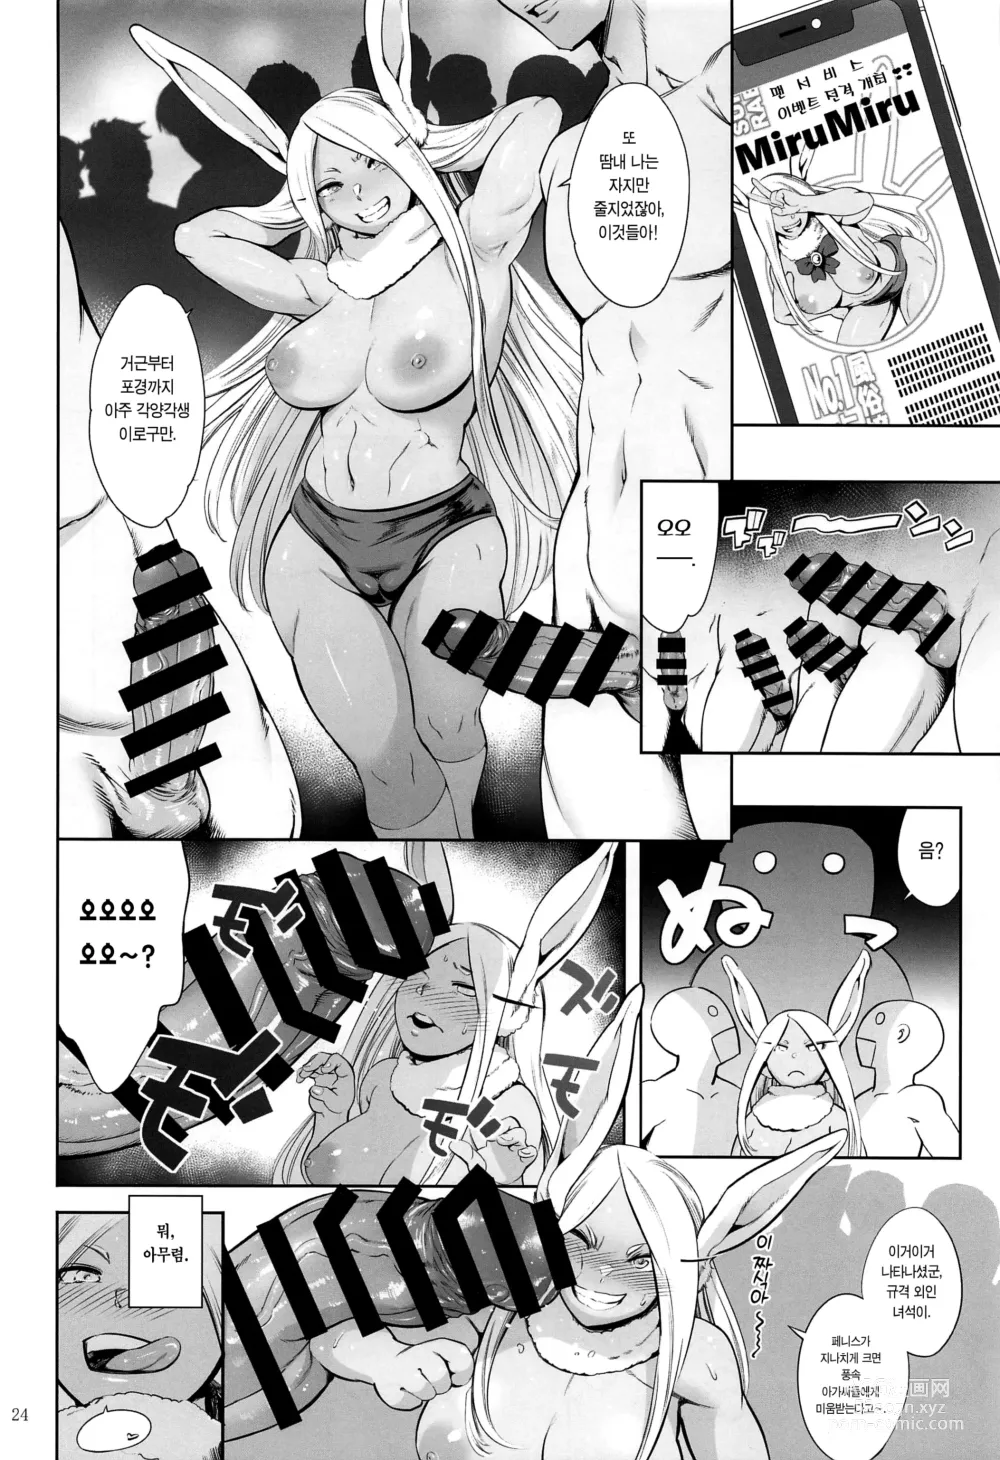 Page 23 of doujinshi 지명은 토끼입니까?